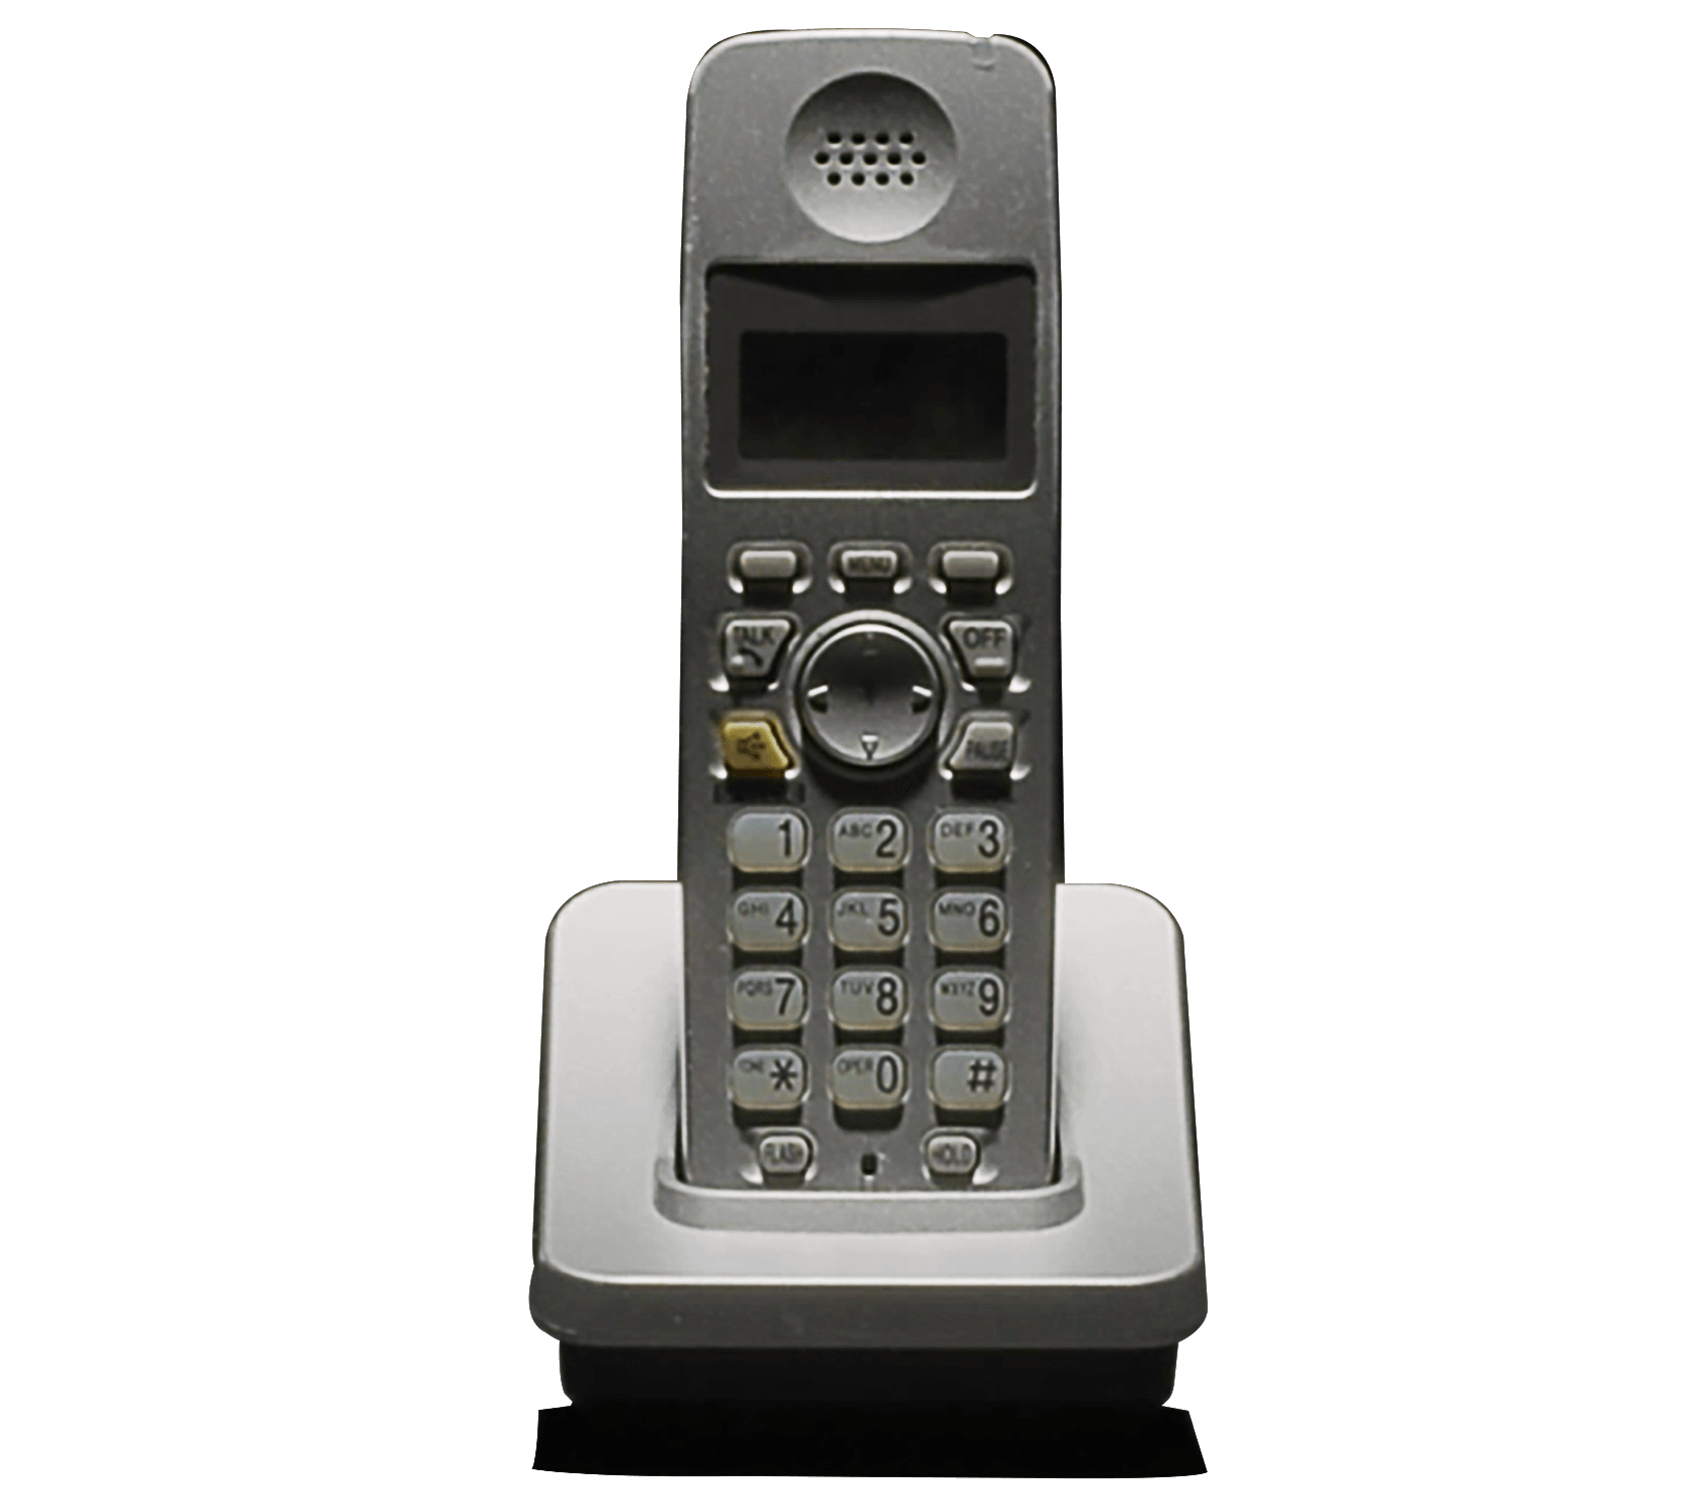 1990s phone